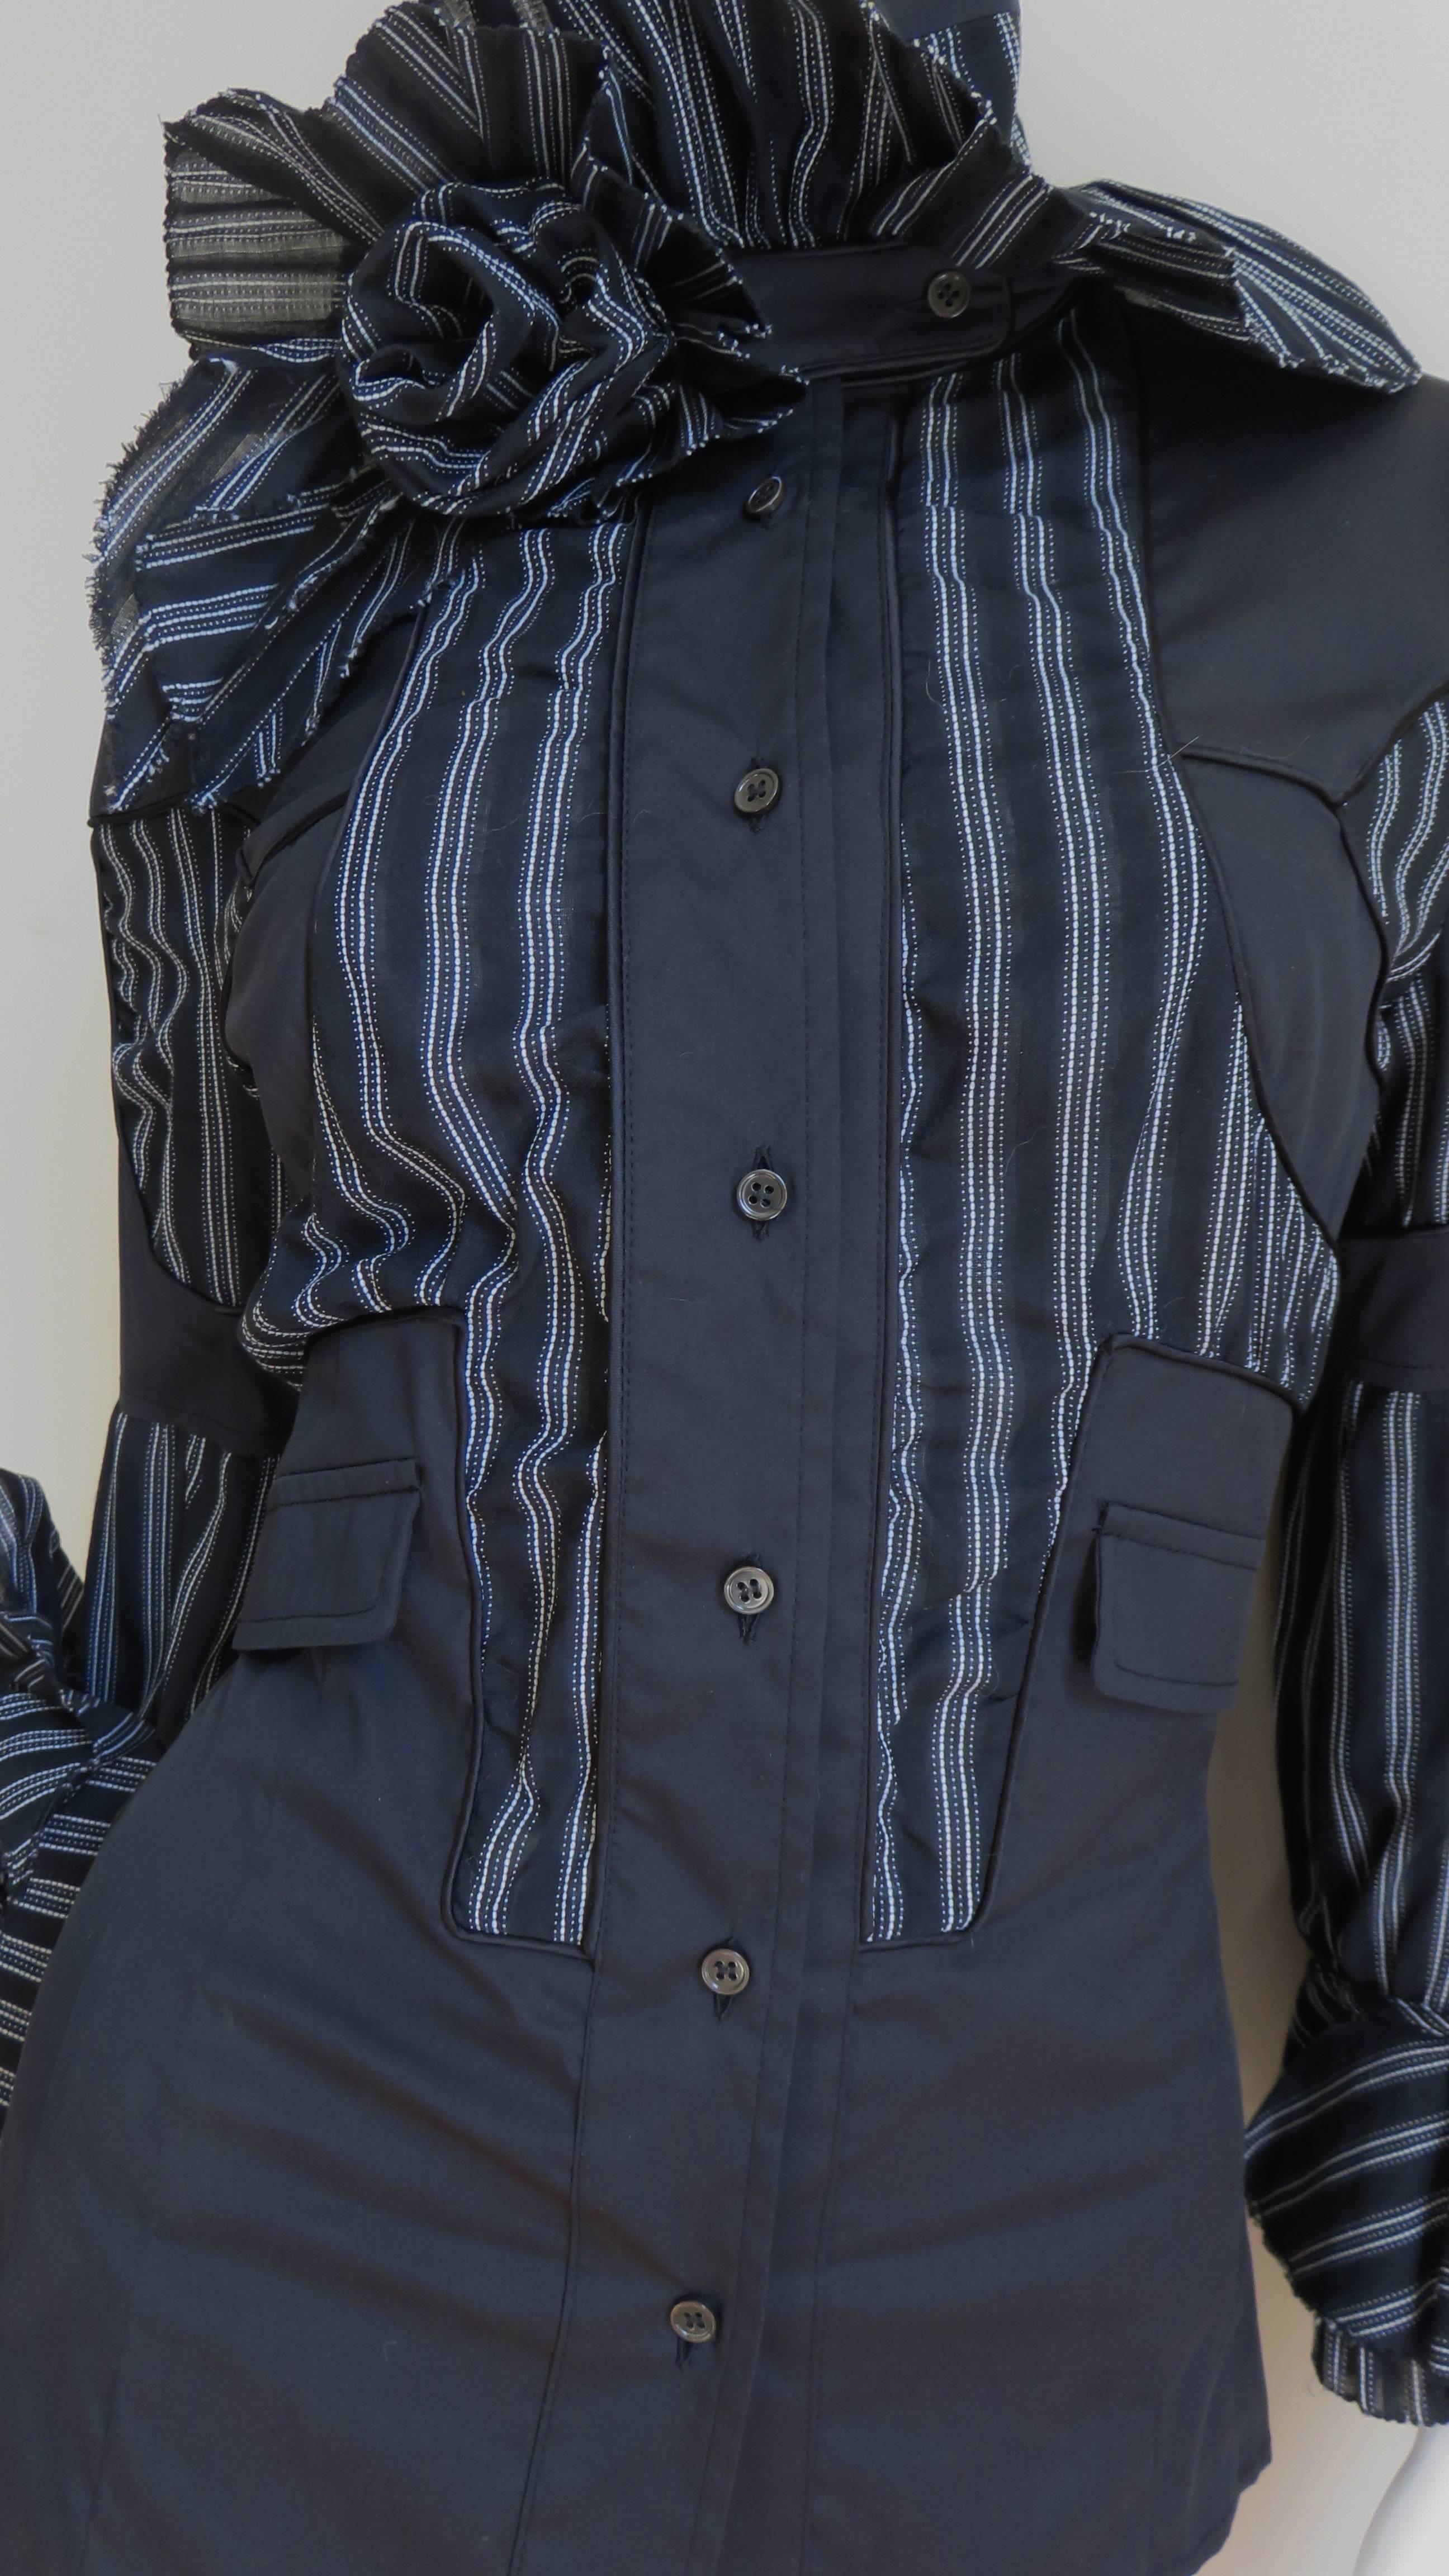 Ein wunderschönes Hemd oder eine Jacke von Antonio Berardi in unifarbenem Schwarz und Schwarz mit weißen Streifen aus einer Seiden-Baumwollmischung mit leichtem Stretch-Anteil. Es hat viele Details - Stoffrosen und Rüschen am Hals und an den